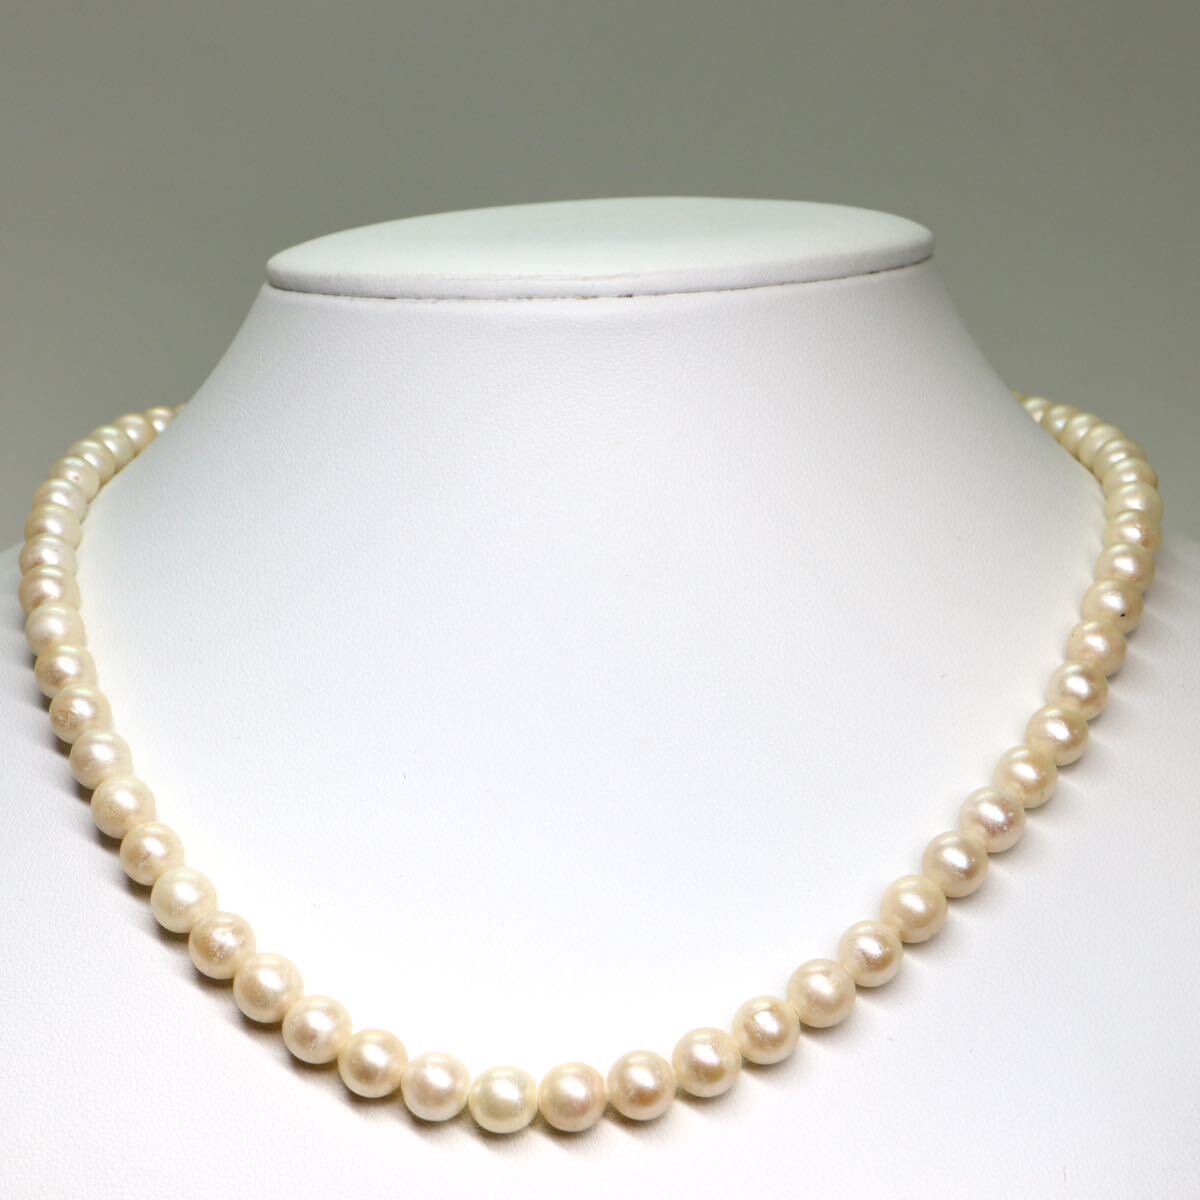 《アコヤ本真珠ネックレス》M 28.7g 約44.5cm 約6.5-7.0mm珠 pearl パール necklace ジュエリー jewelry CE0/DA0_画像2